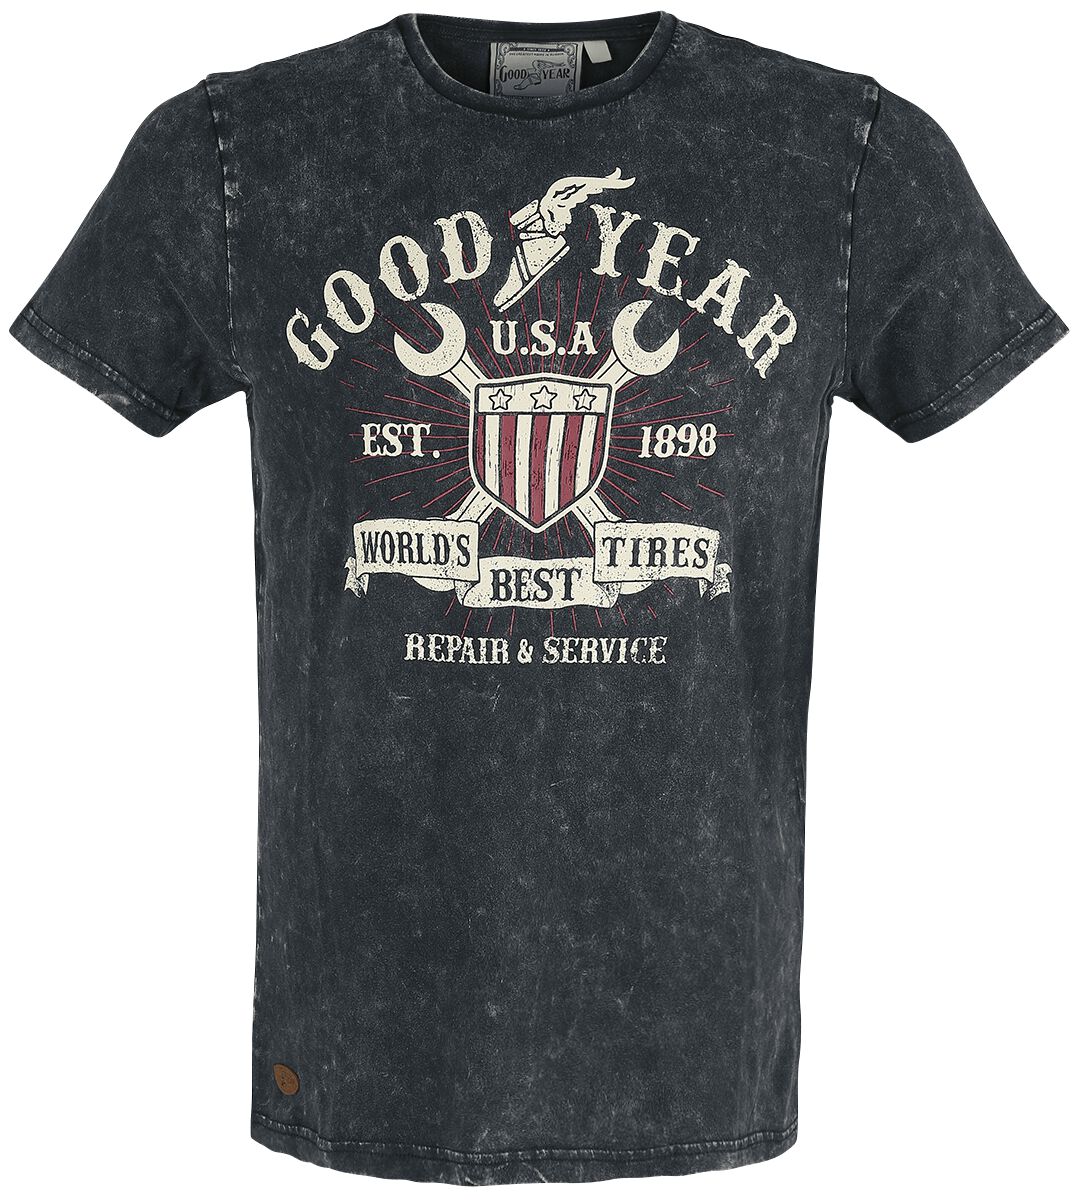 goodyear - rockabilly t-shirt - men t-shirt comfort fit - s bis xxl - fÃ¼r mÃ¤nner - grÃ¶ÃŸe l - schwarz